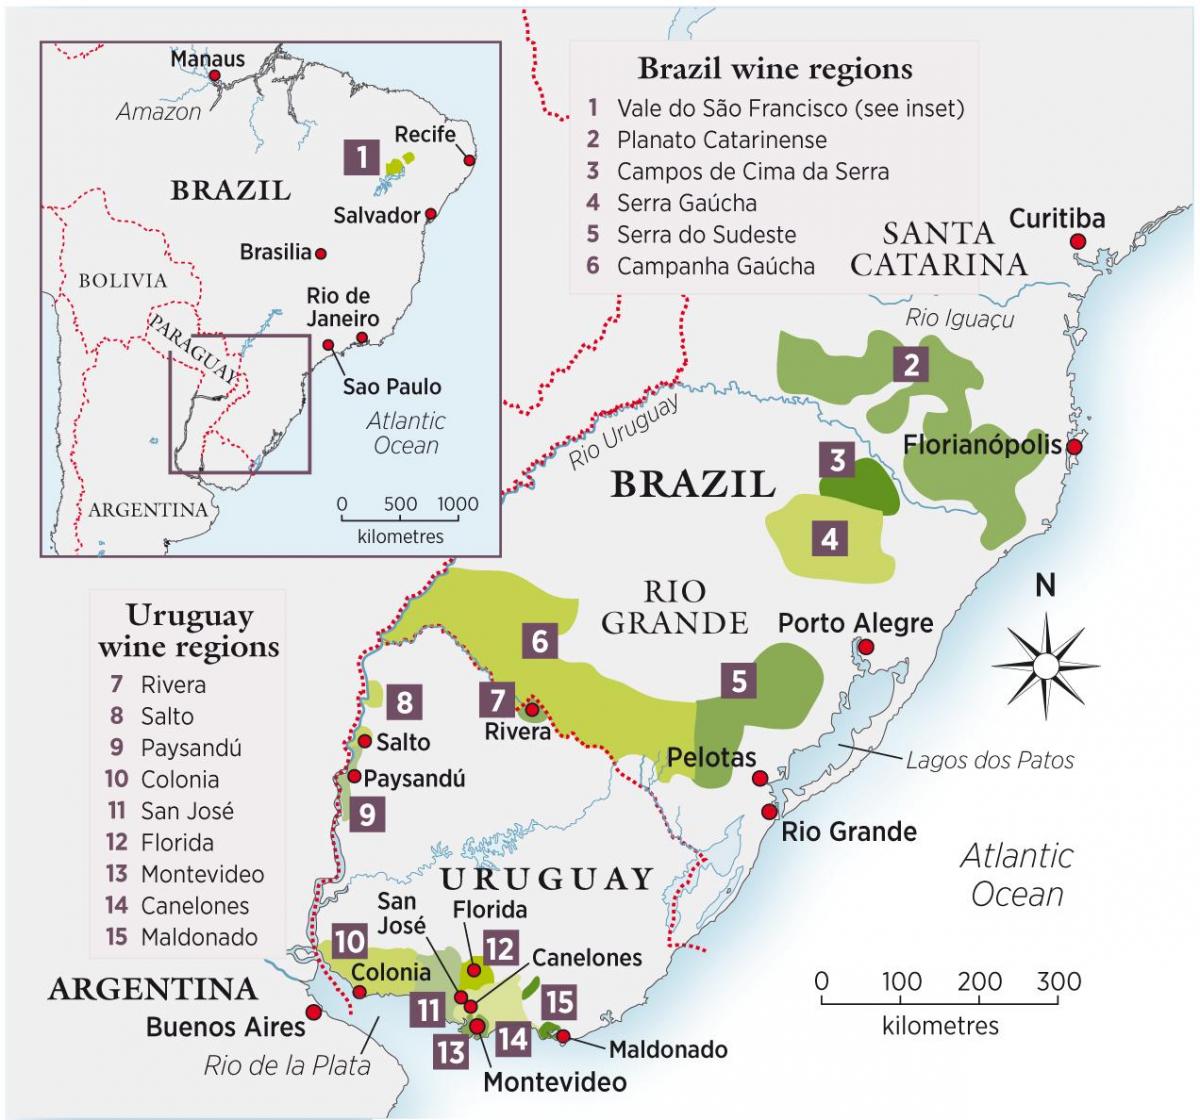 Peta dari Uruguay wain